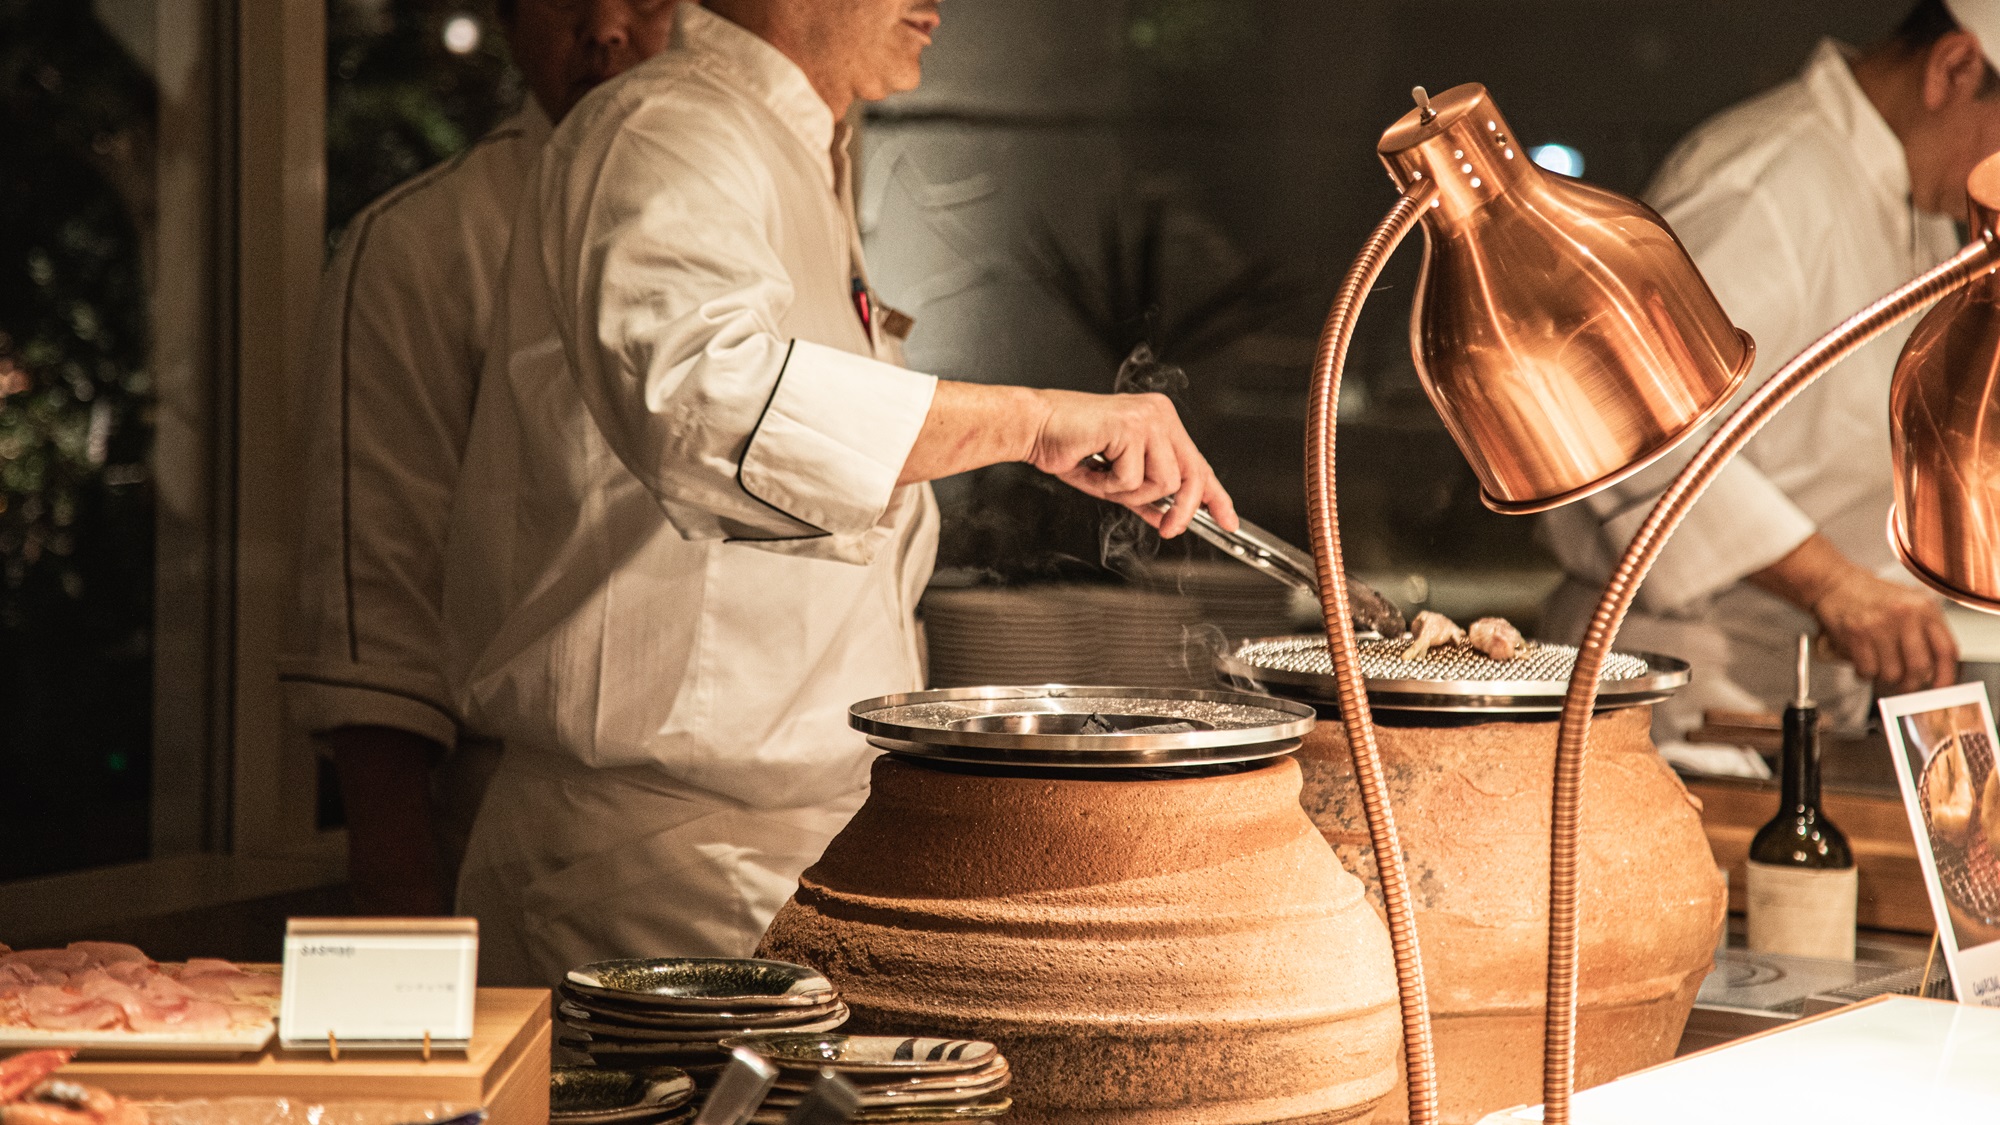 【夕食ブッフェ】ライブキッチンでは料理人が目の前で「焼河豚」を火鉢で焼いてご提供しております。